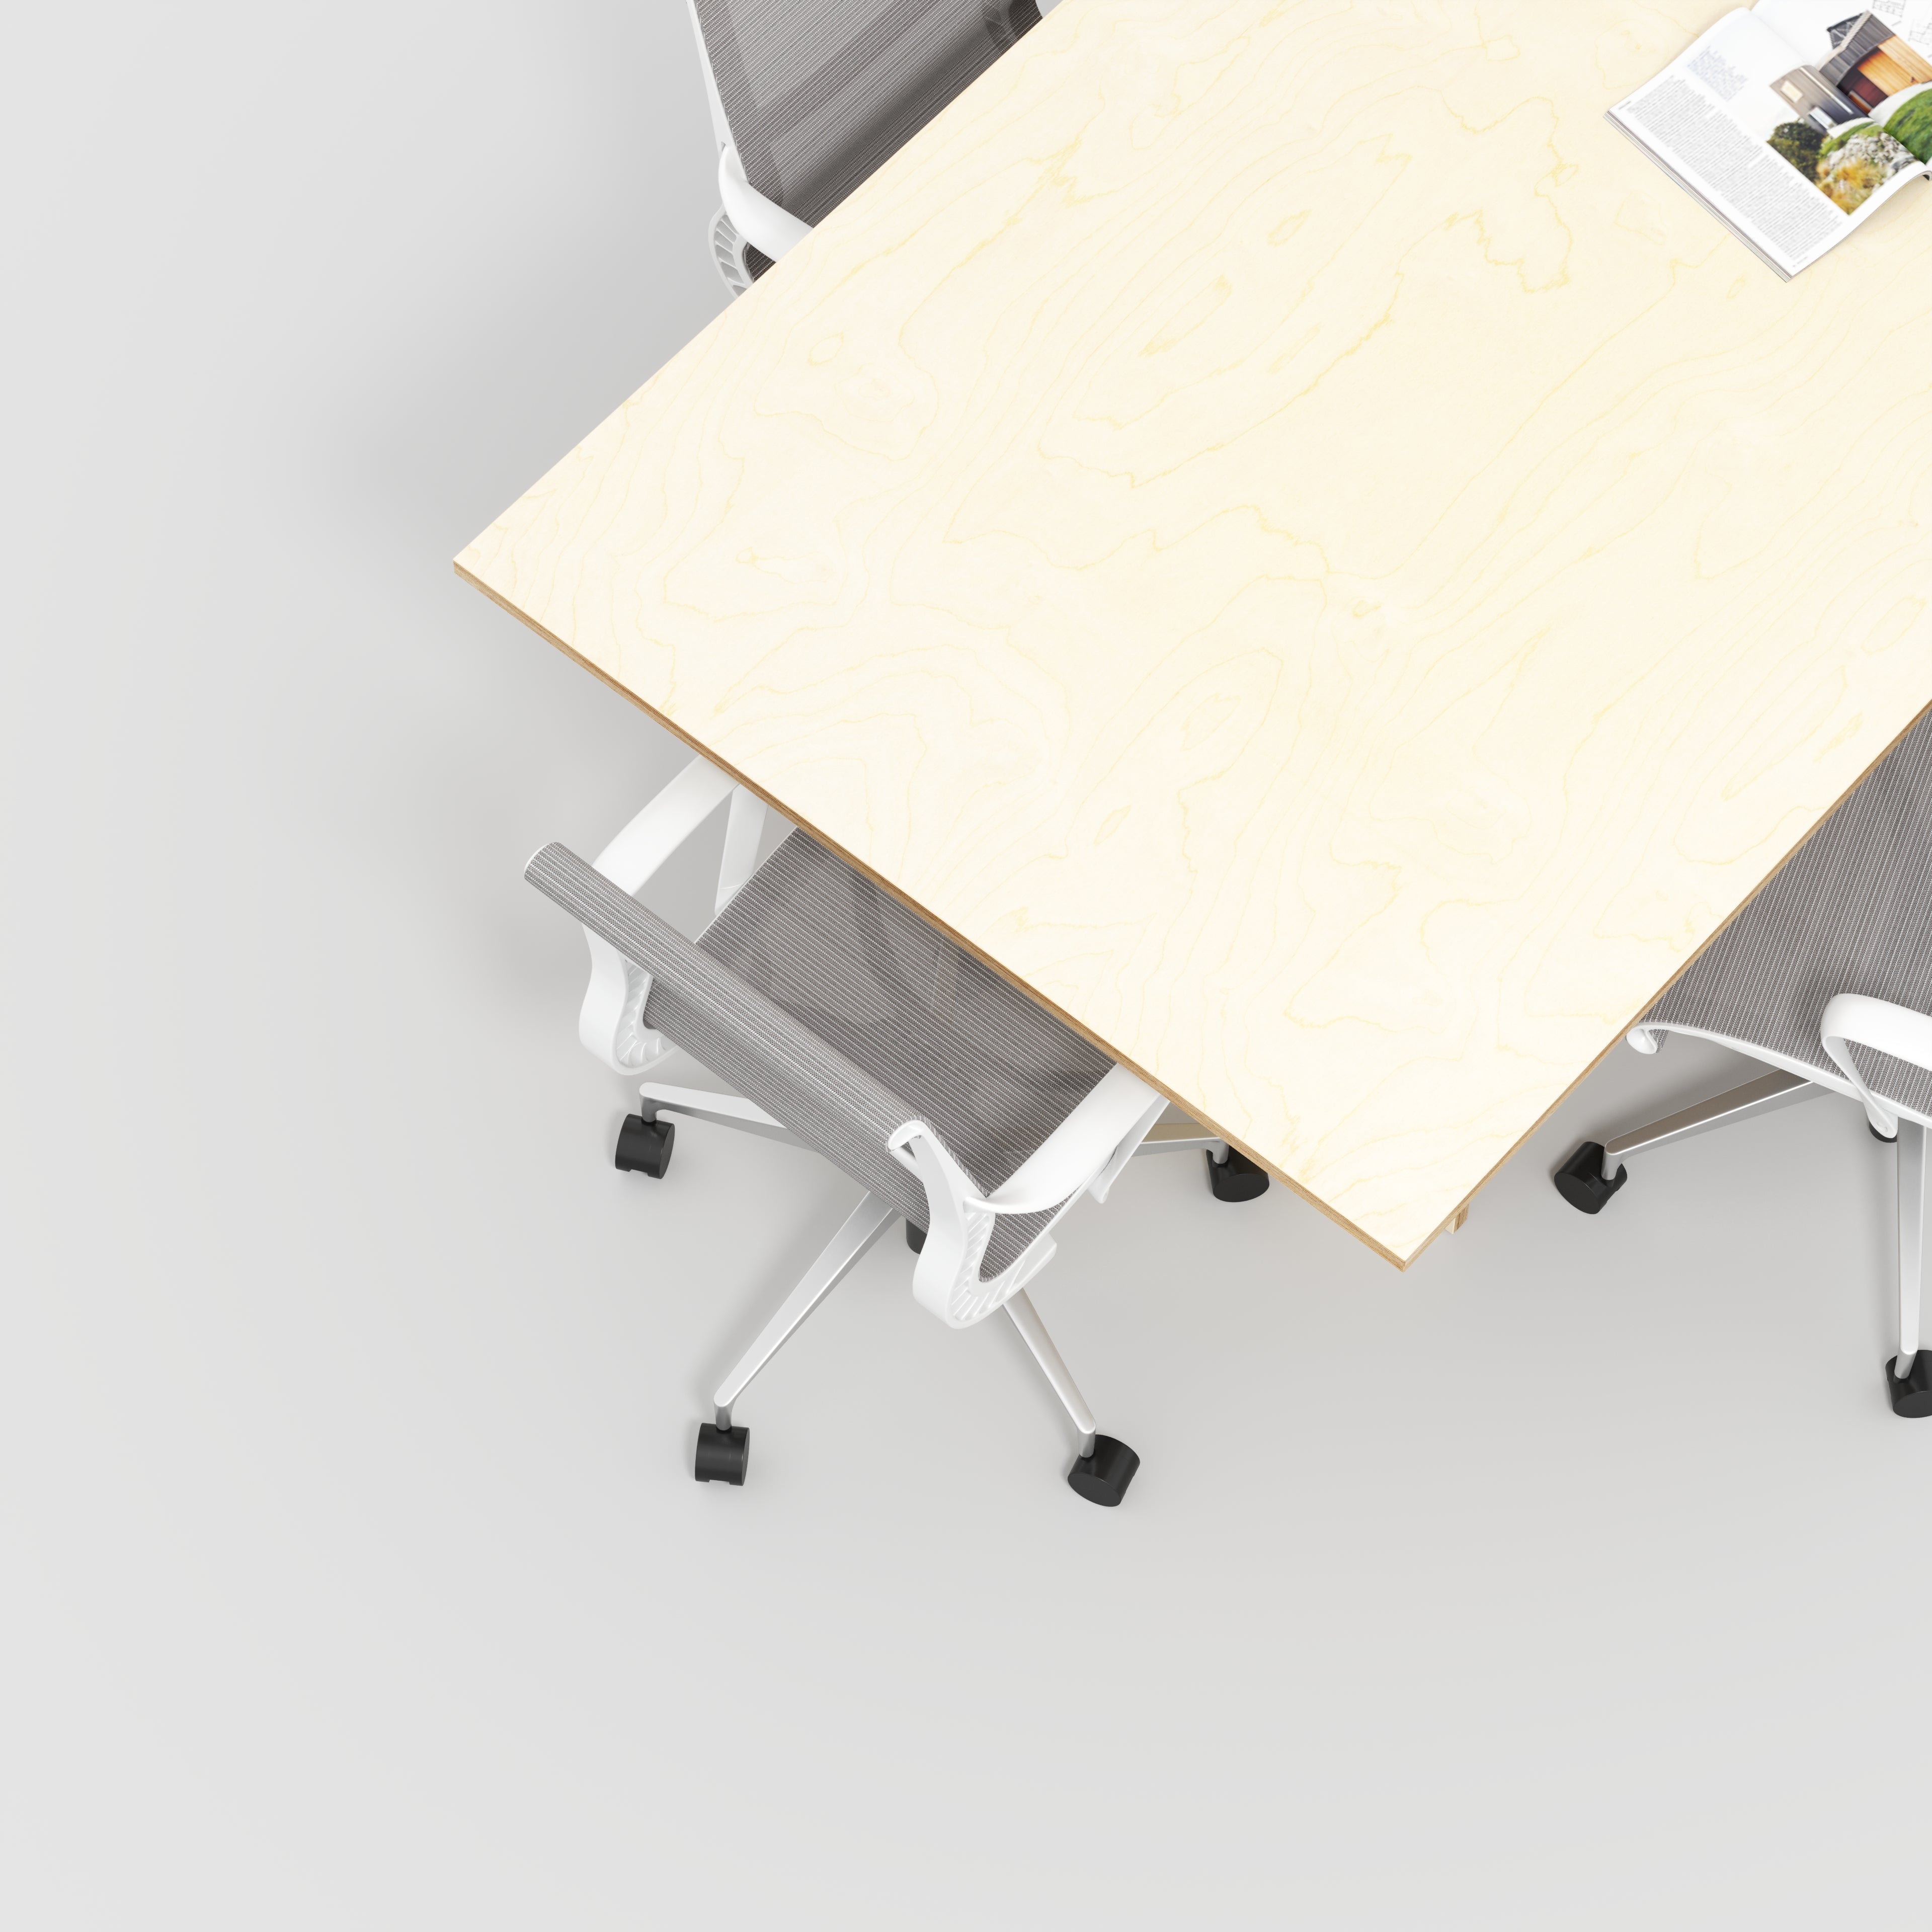 Custom Plywood Platform Table